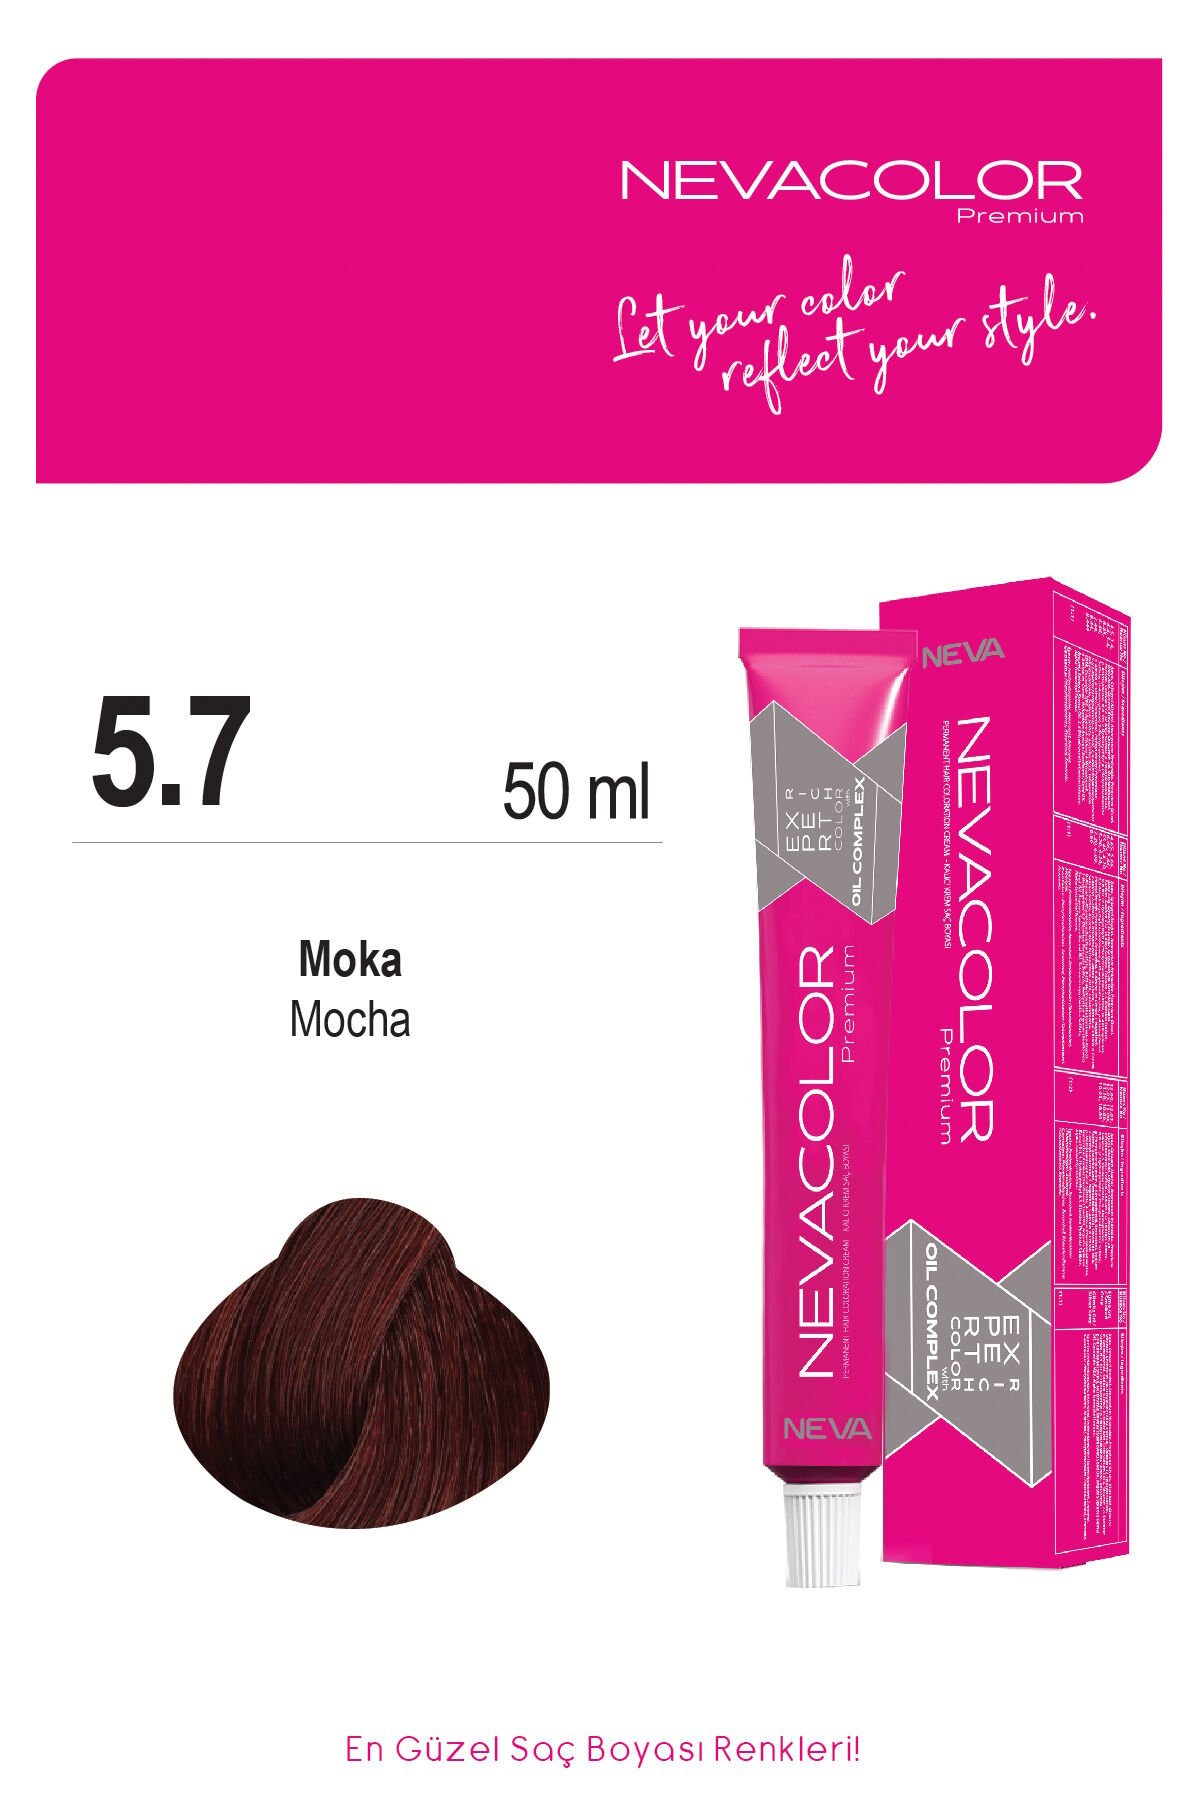 Nevacolor Premium 5.7 Moka Kalıcı Krem Saç Boyası 50 g Tüp